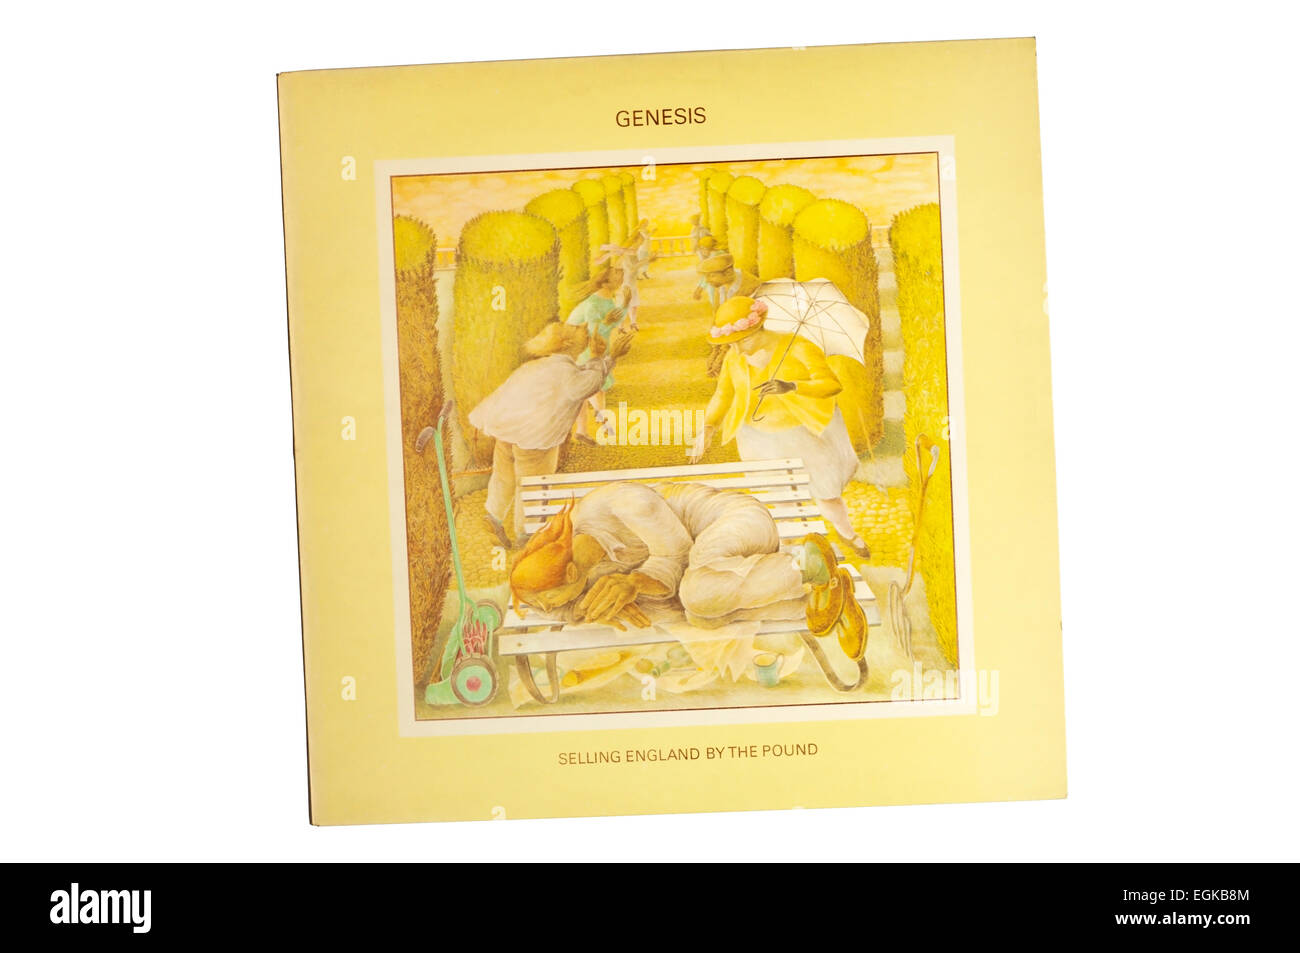 La vendita di Inghilterra con la sterlina è stato il quinto album in studio da inglese prog rock band Genesis, rilasciato nel 1973 sul carisma record. Foto Stock